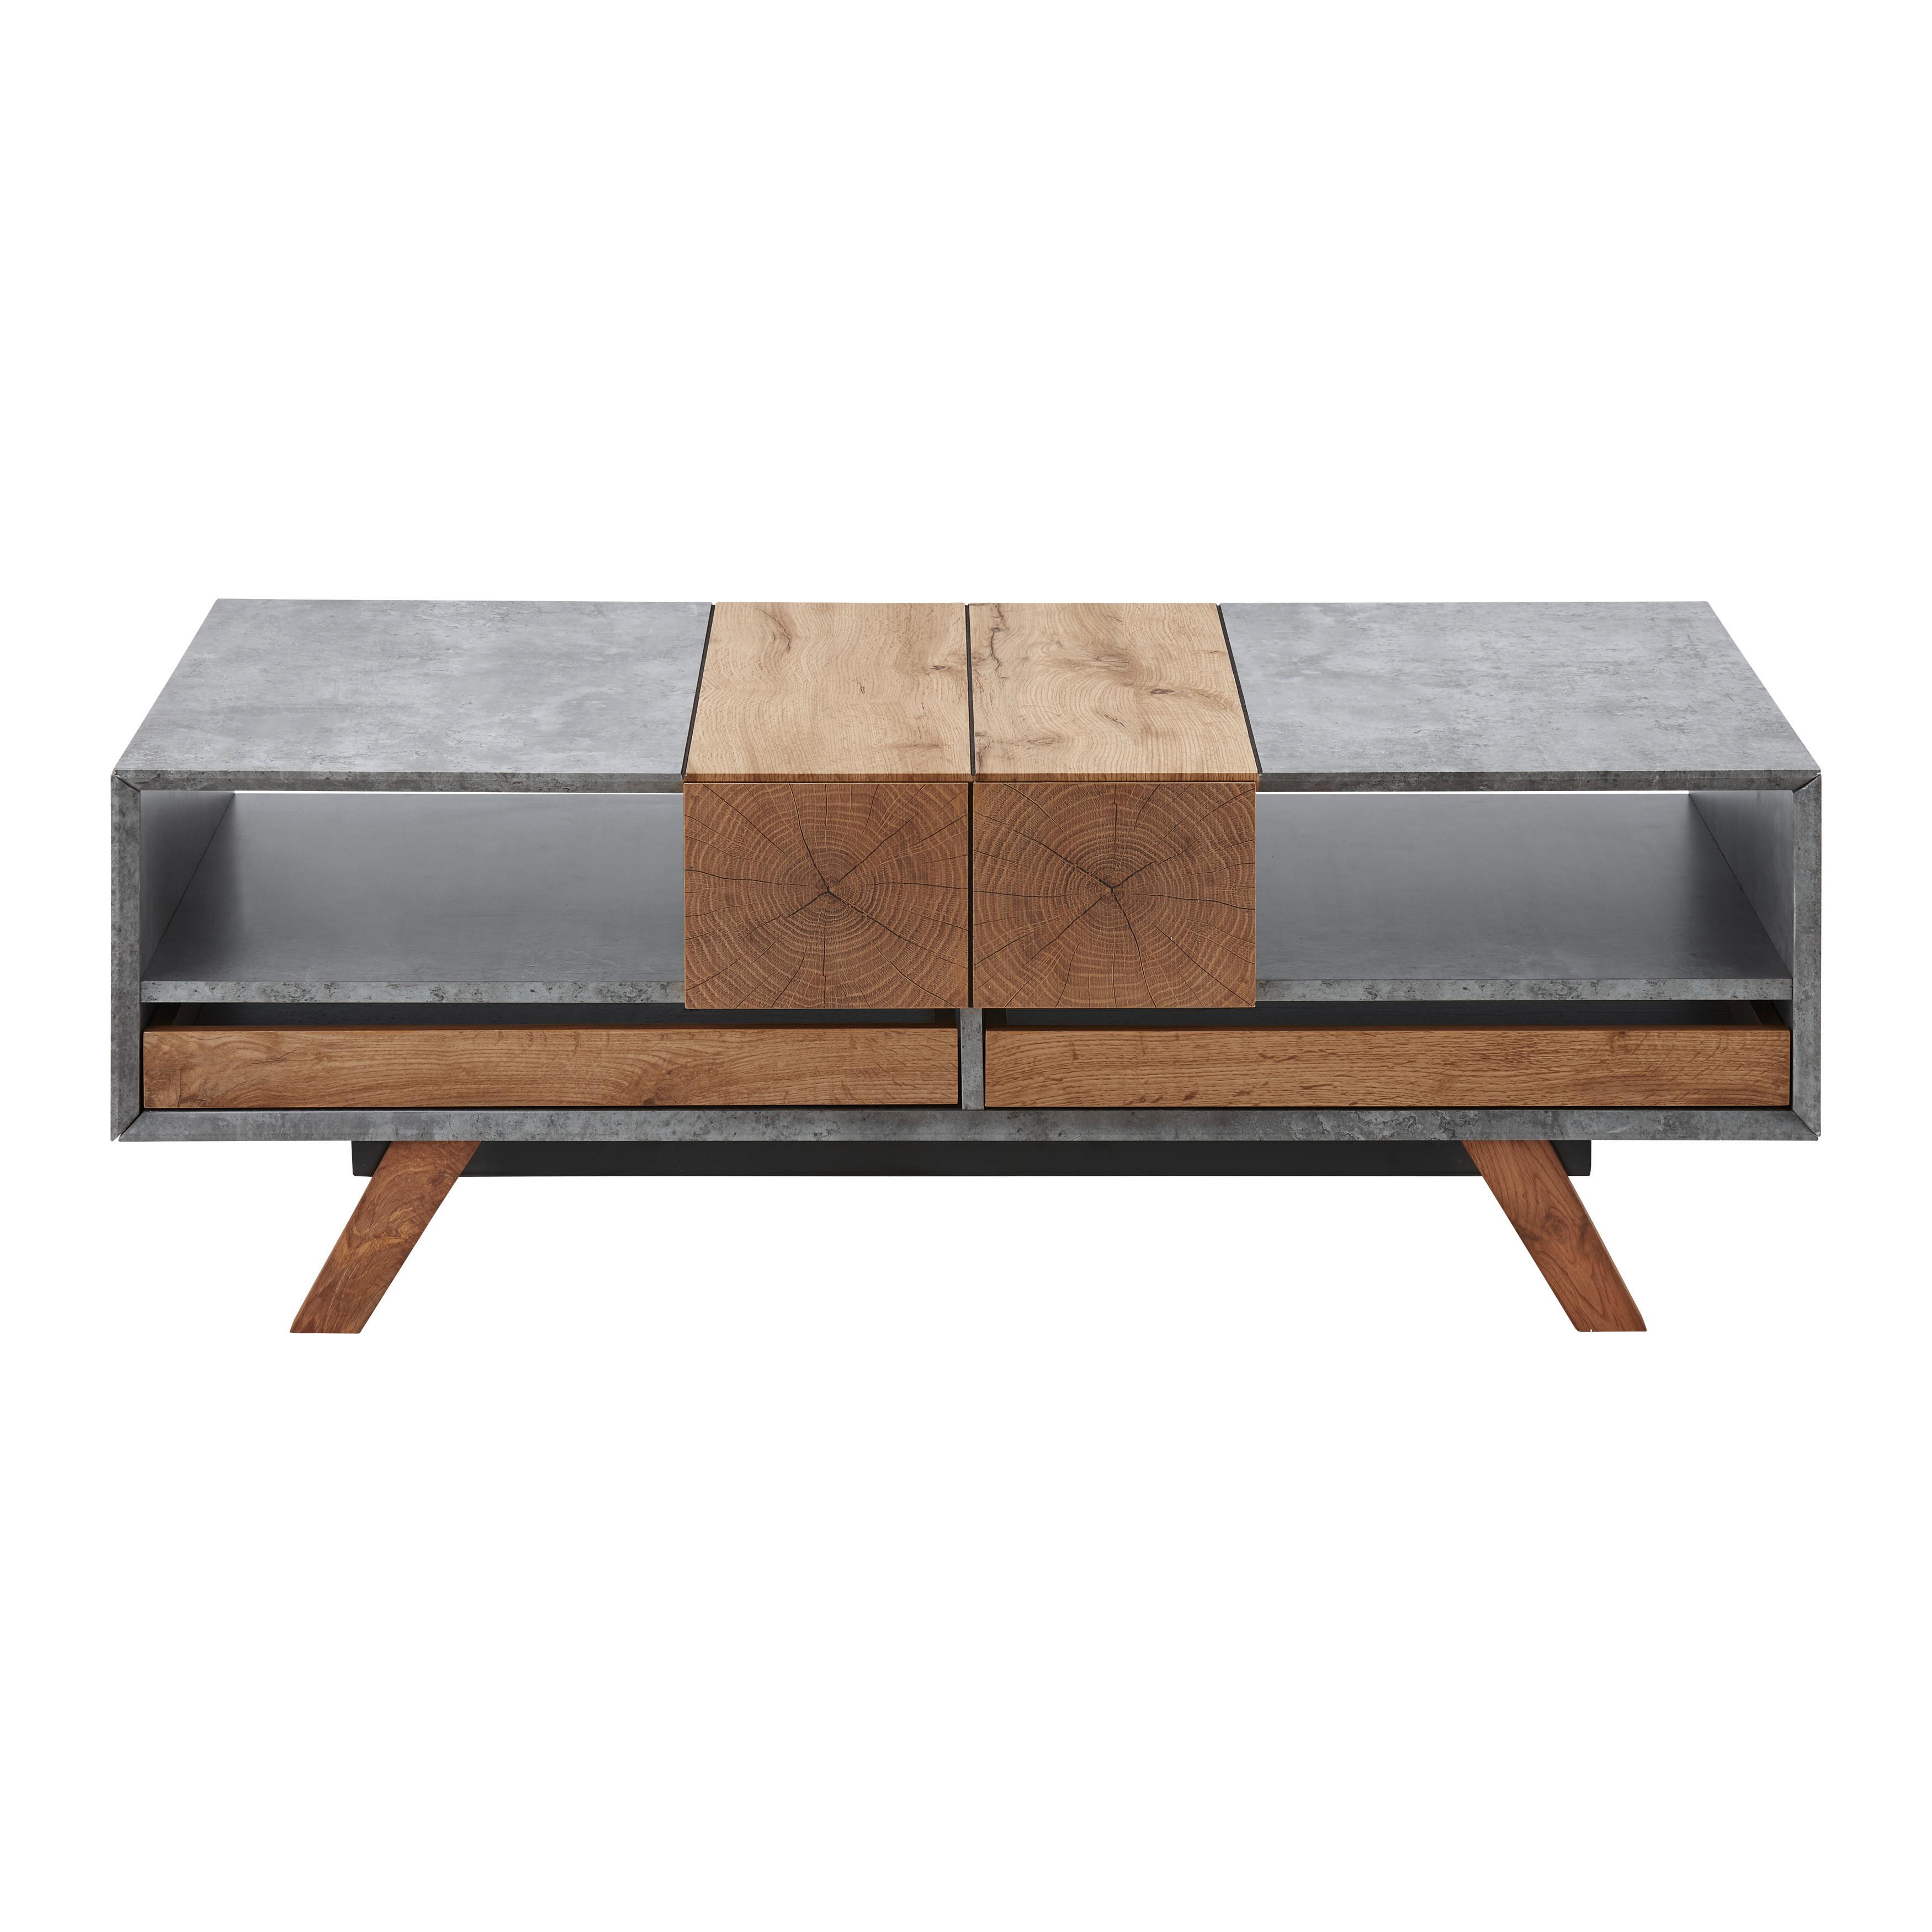 Konferenční Stolek Casper - šedá/barvy dubu, Moderní, dřevo (60/120/42cm) - Modern Living